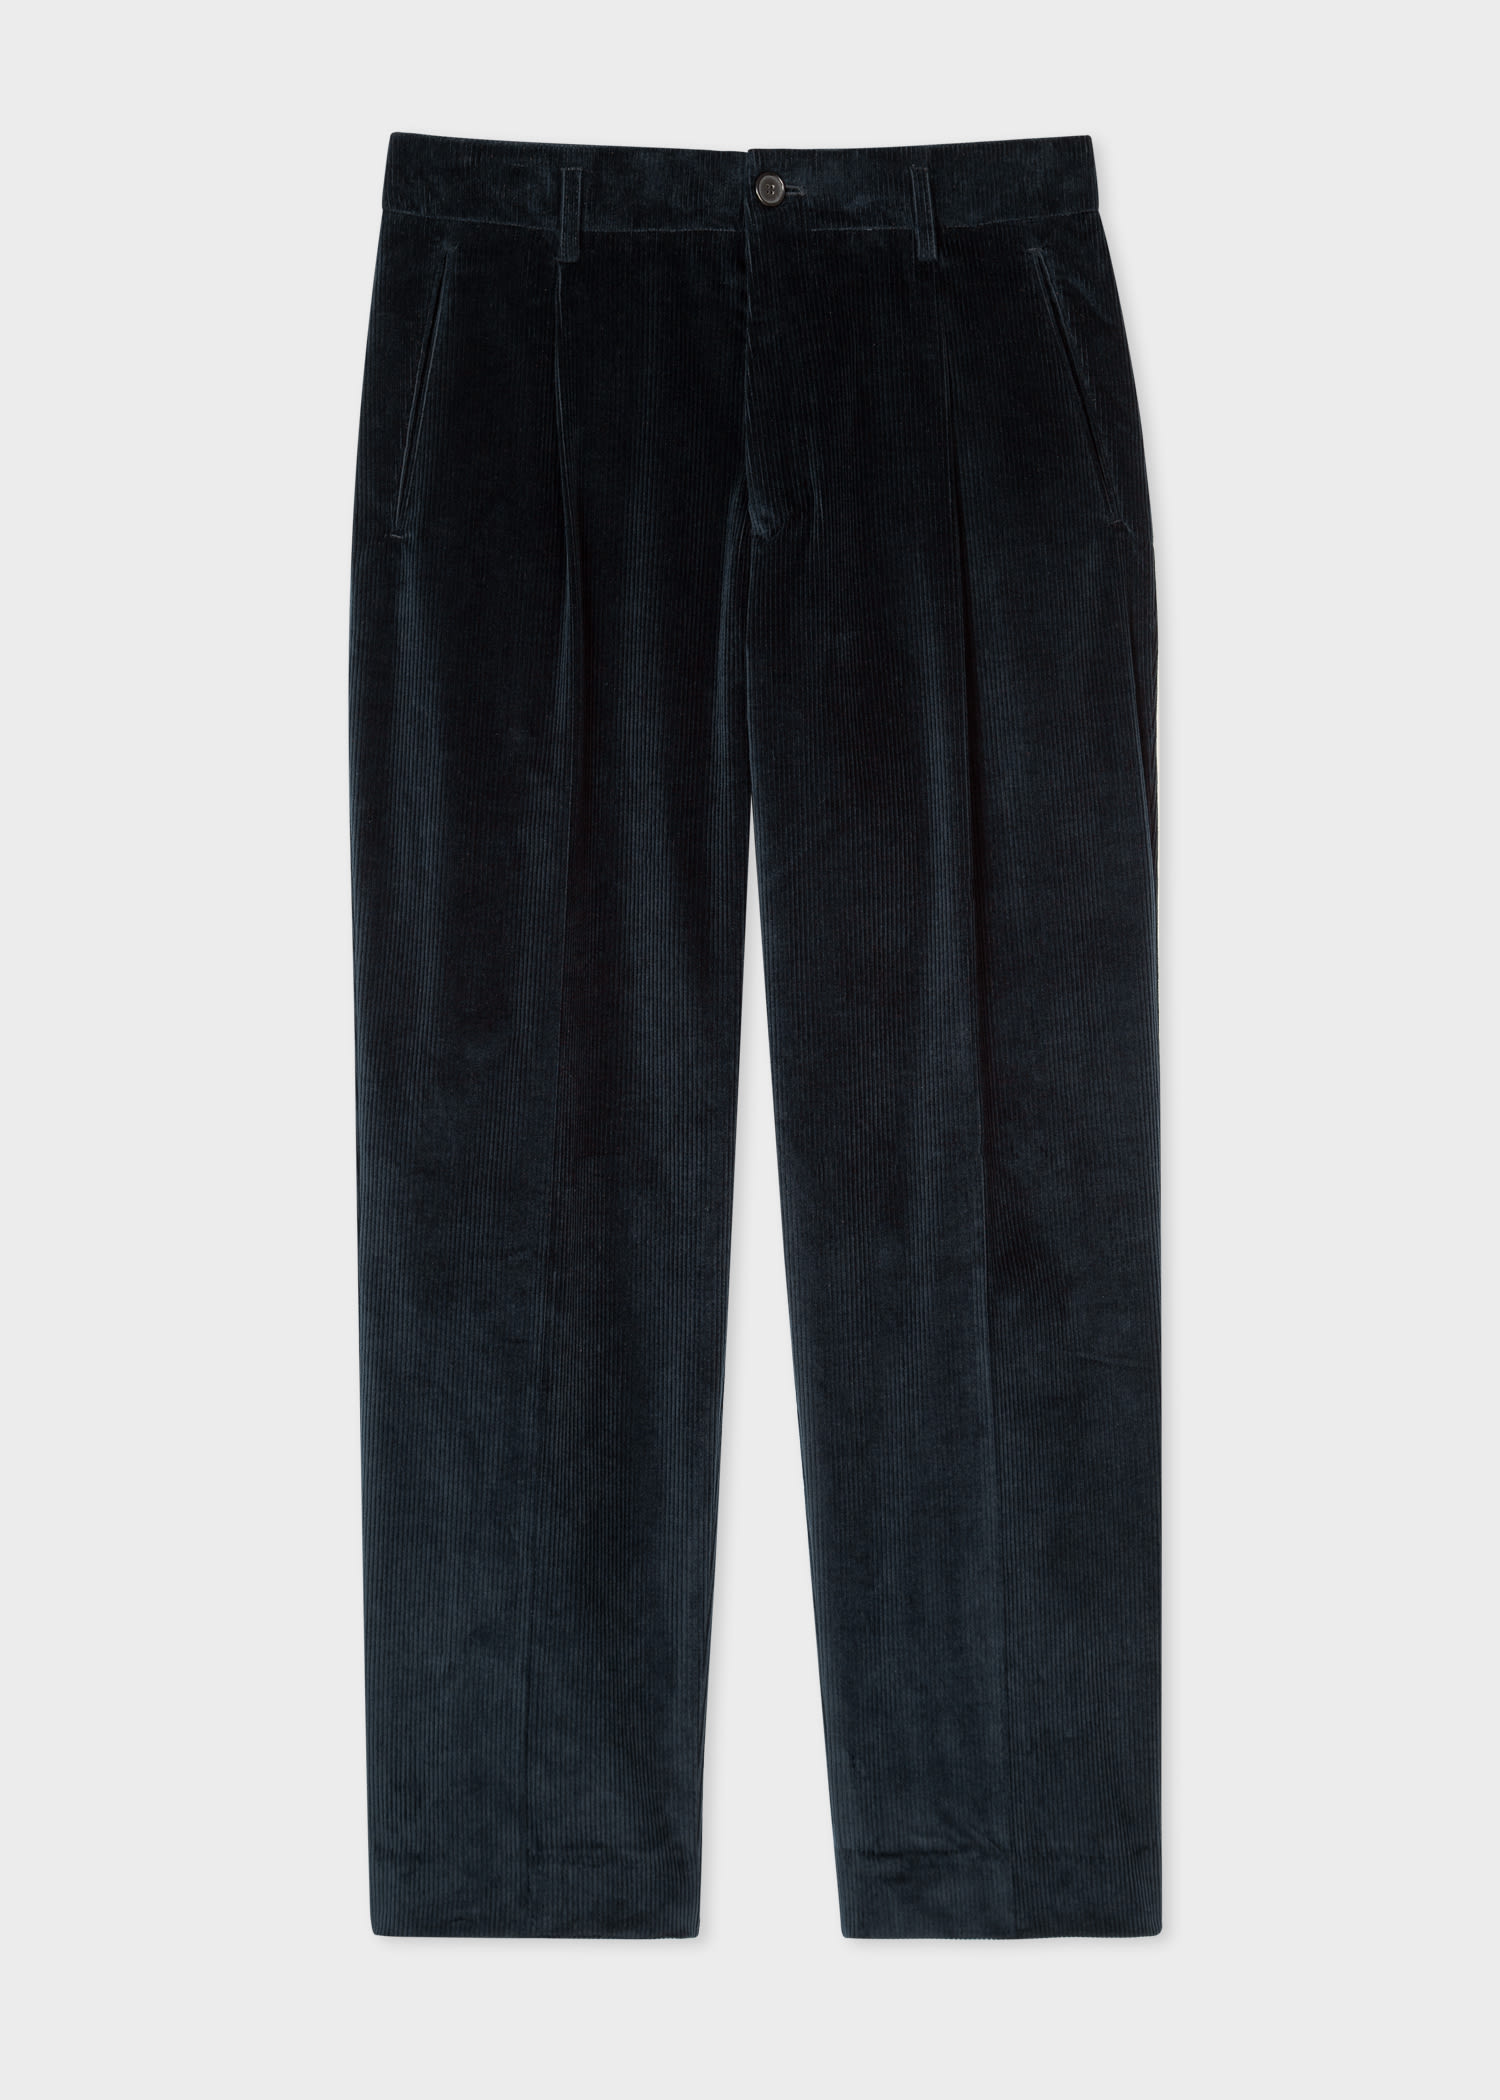 폴 스미스 팬츠 Paul Smith Mens Navy Pleated Cotton-Cashmere Corduroy Trousers